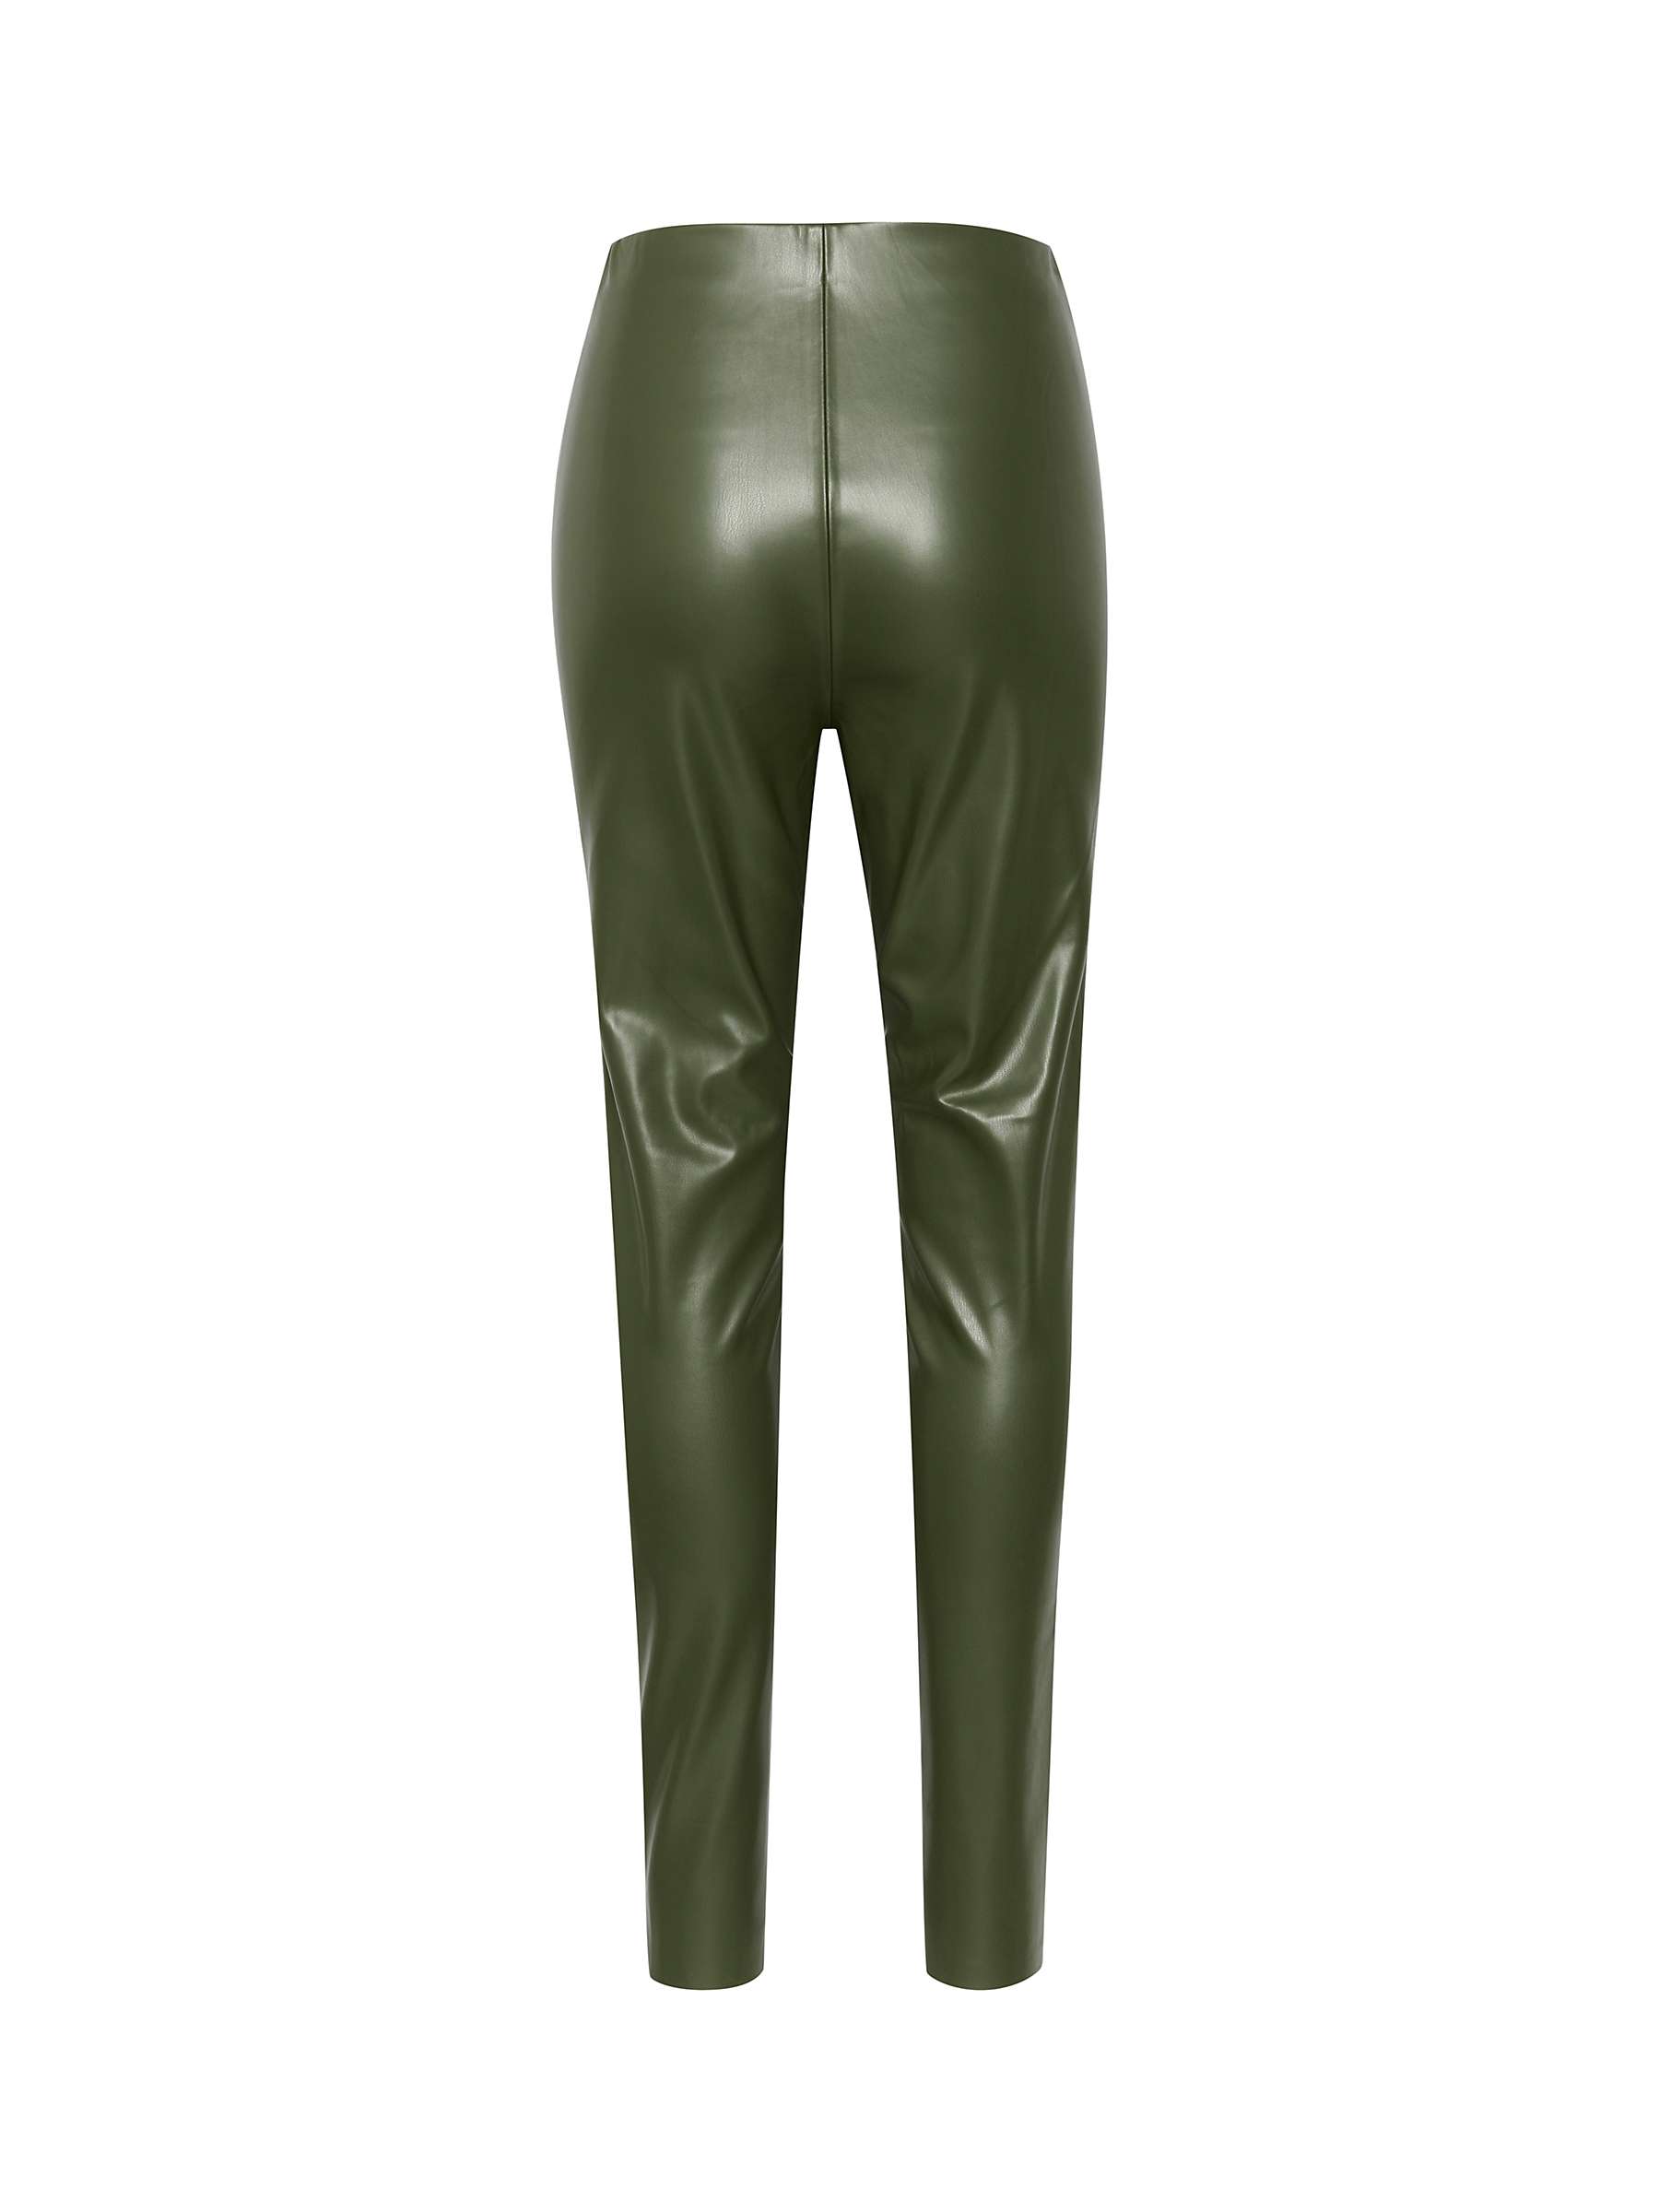 Buy Soaked In Luxury Kaylee Slim Fit Leggings, Green Online at johnlewis.com